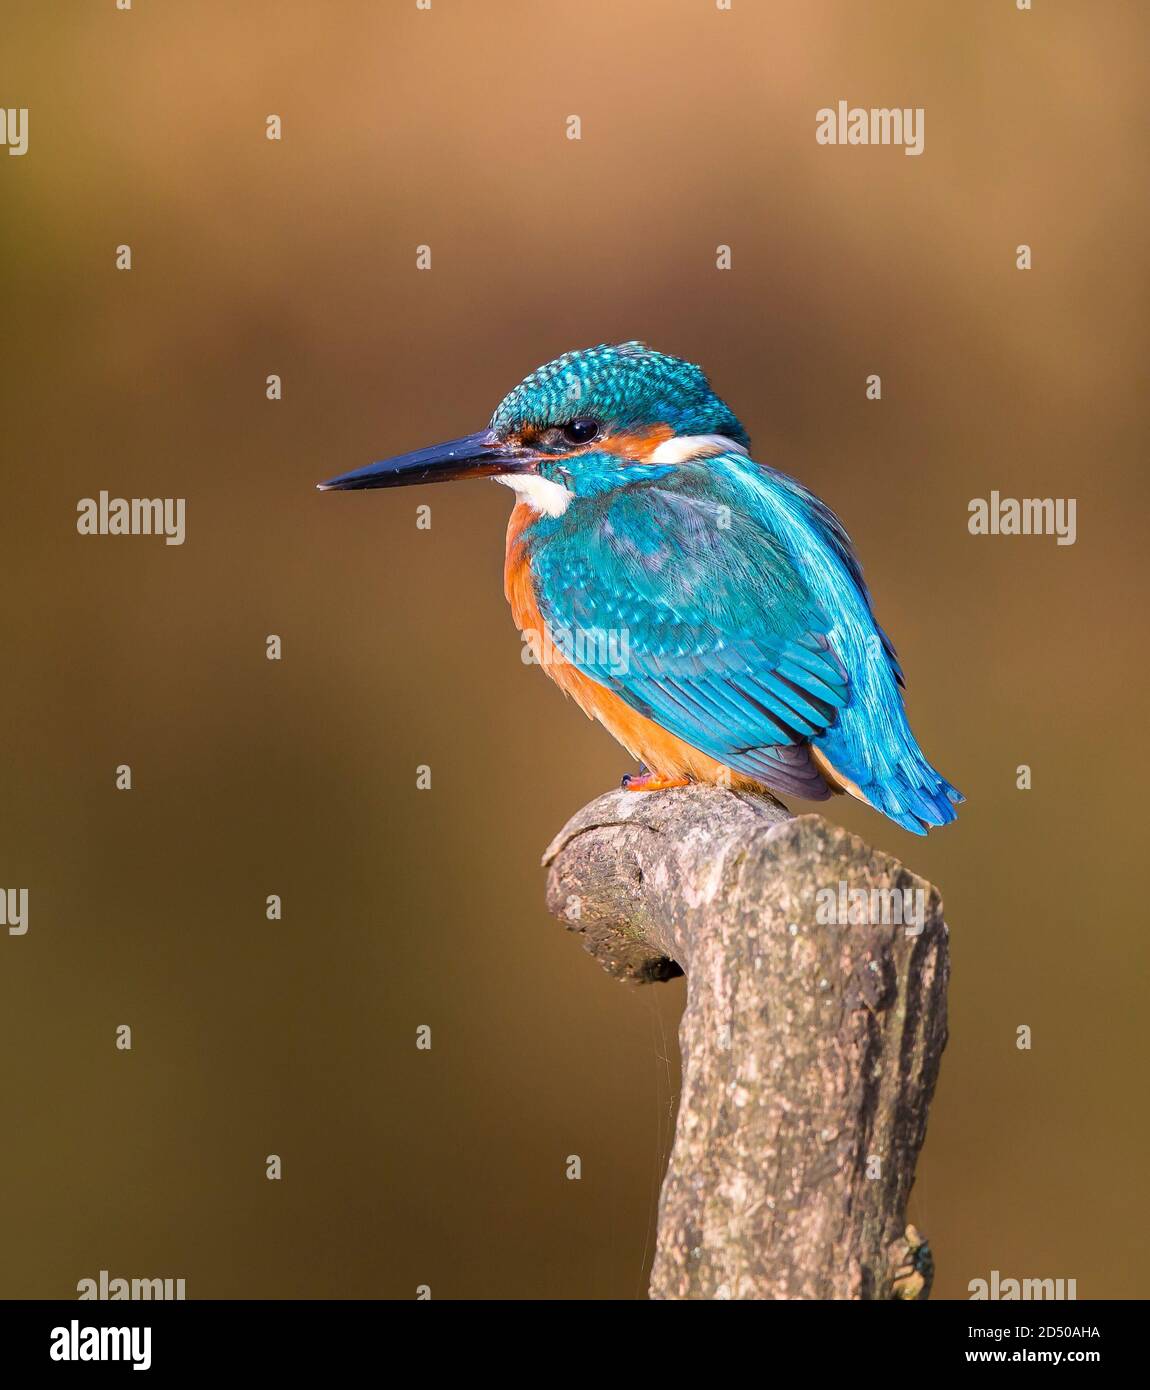 Vista laterale primo piano di un uccello del Martin pescatore britannico (Alcedo atthis) che si trova isolato su un ramo, rivolto a sinistra, con un morbido sfondo bokeh. Foto Stock